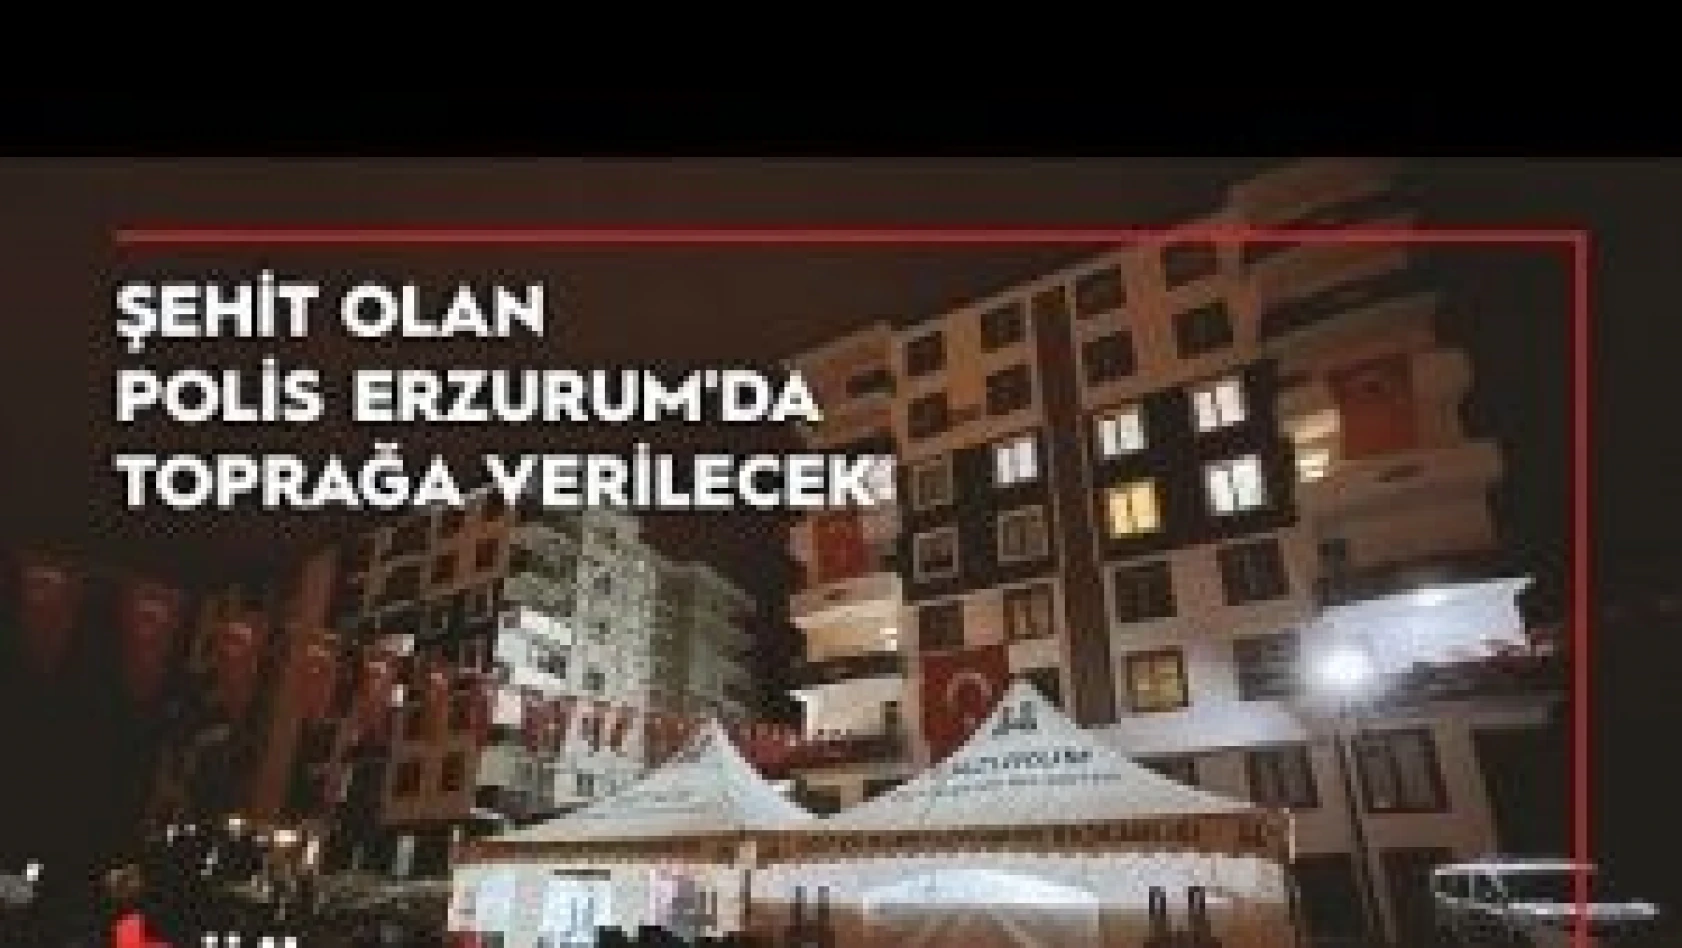 Balıkesir'de zanlılarının açtığı ateş sonucu şehit olan polis Erzurum'da toprağa verilecek